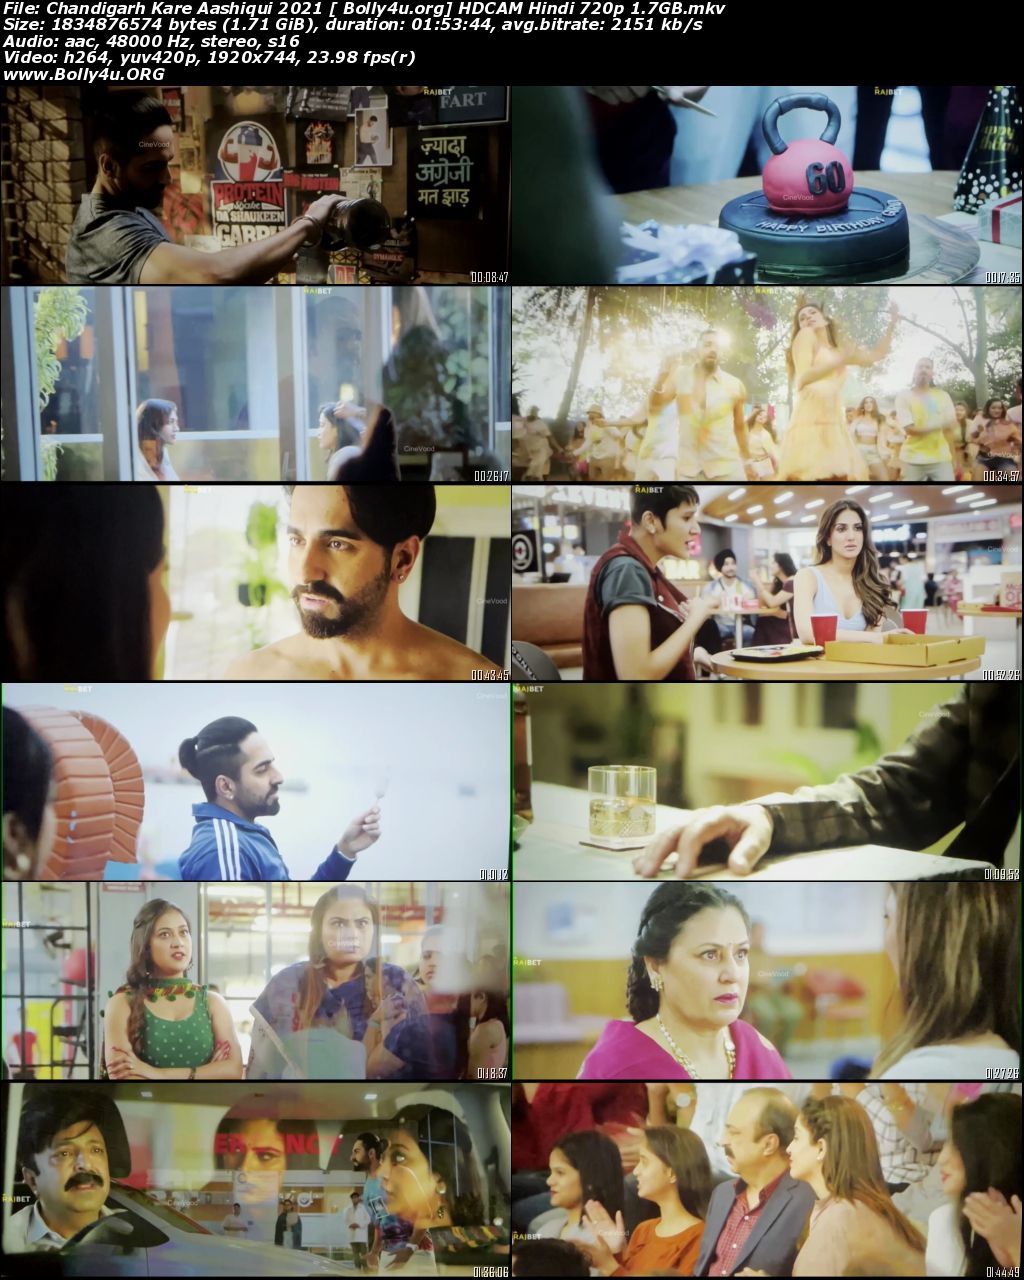 Chandigarh Kare Aashiqui 2021 HDCAM Hindi Movie Download 720p